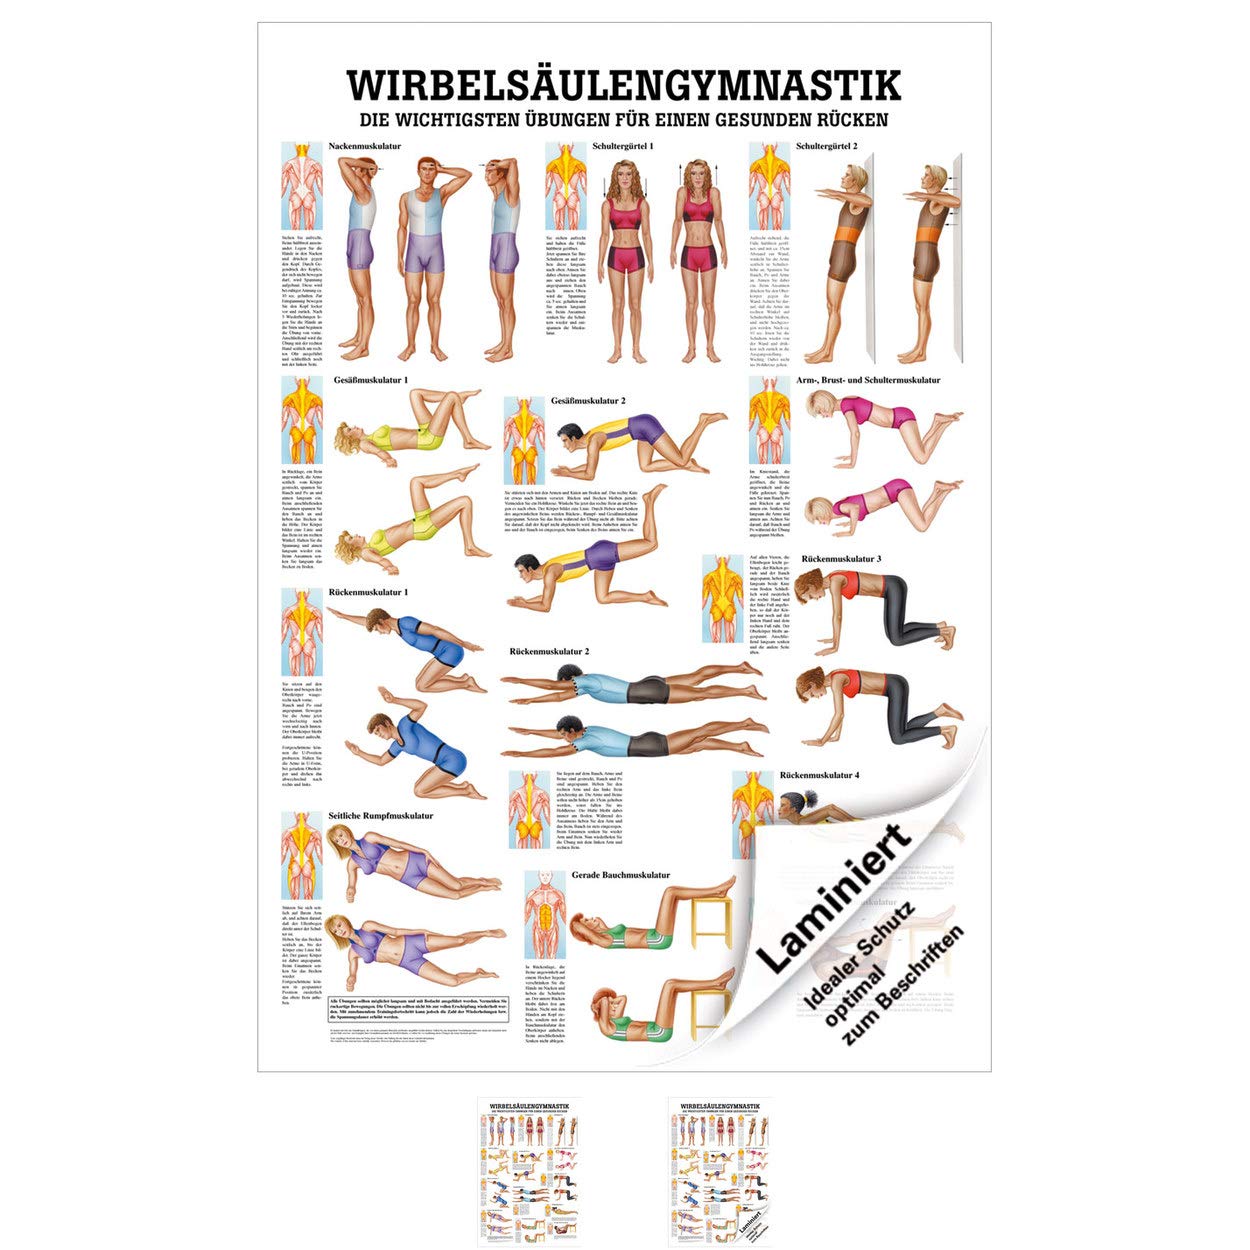 Rüdiger Wirbelsäulengymnastik Lehrtafel Anatomie 100x70 cm medizinische Lehrmittel